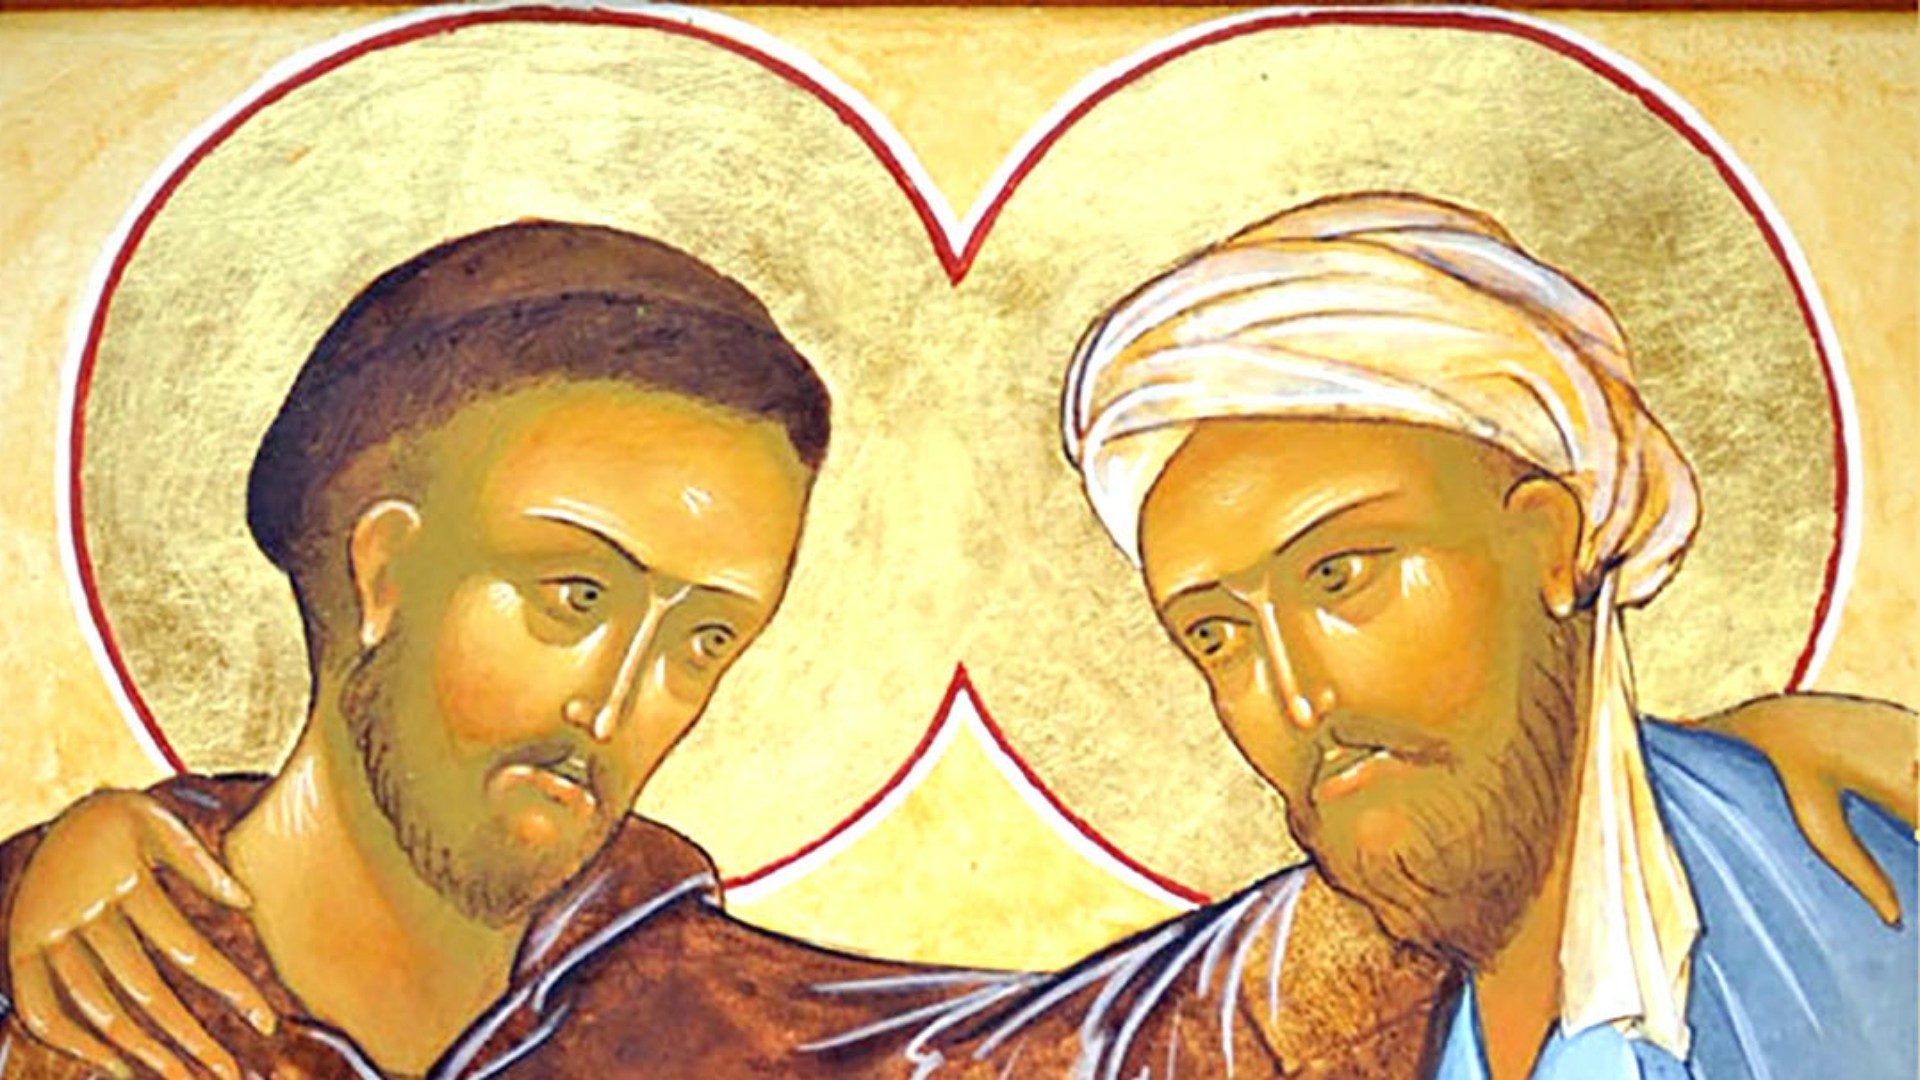 Quand saint François rencontrait le sultan al-Kamil en 1219. Icône originale: Fr. Stéphane/monasteredugairire.org/DR)